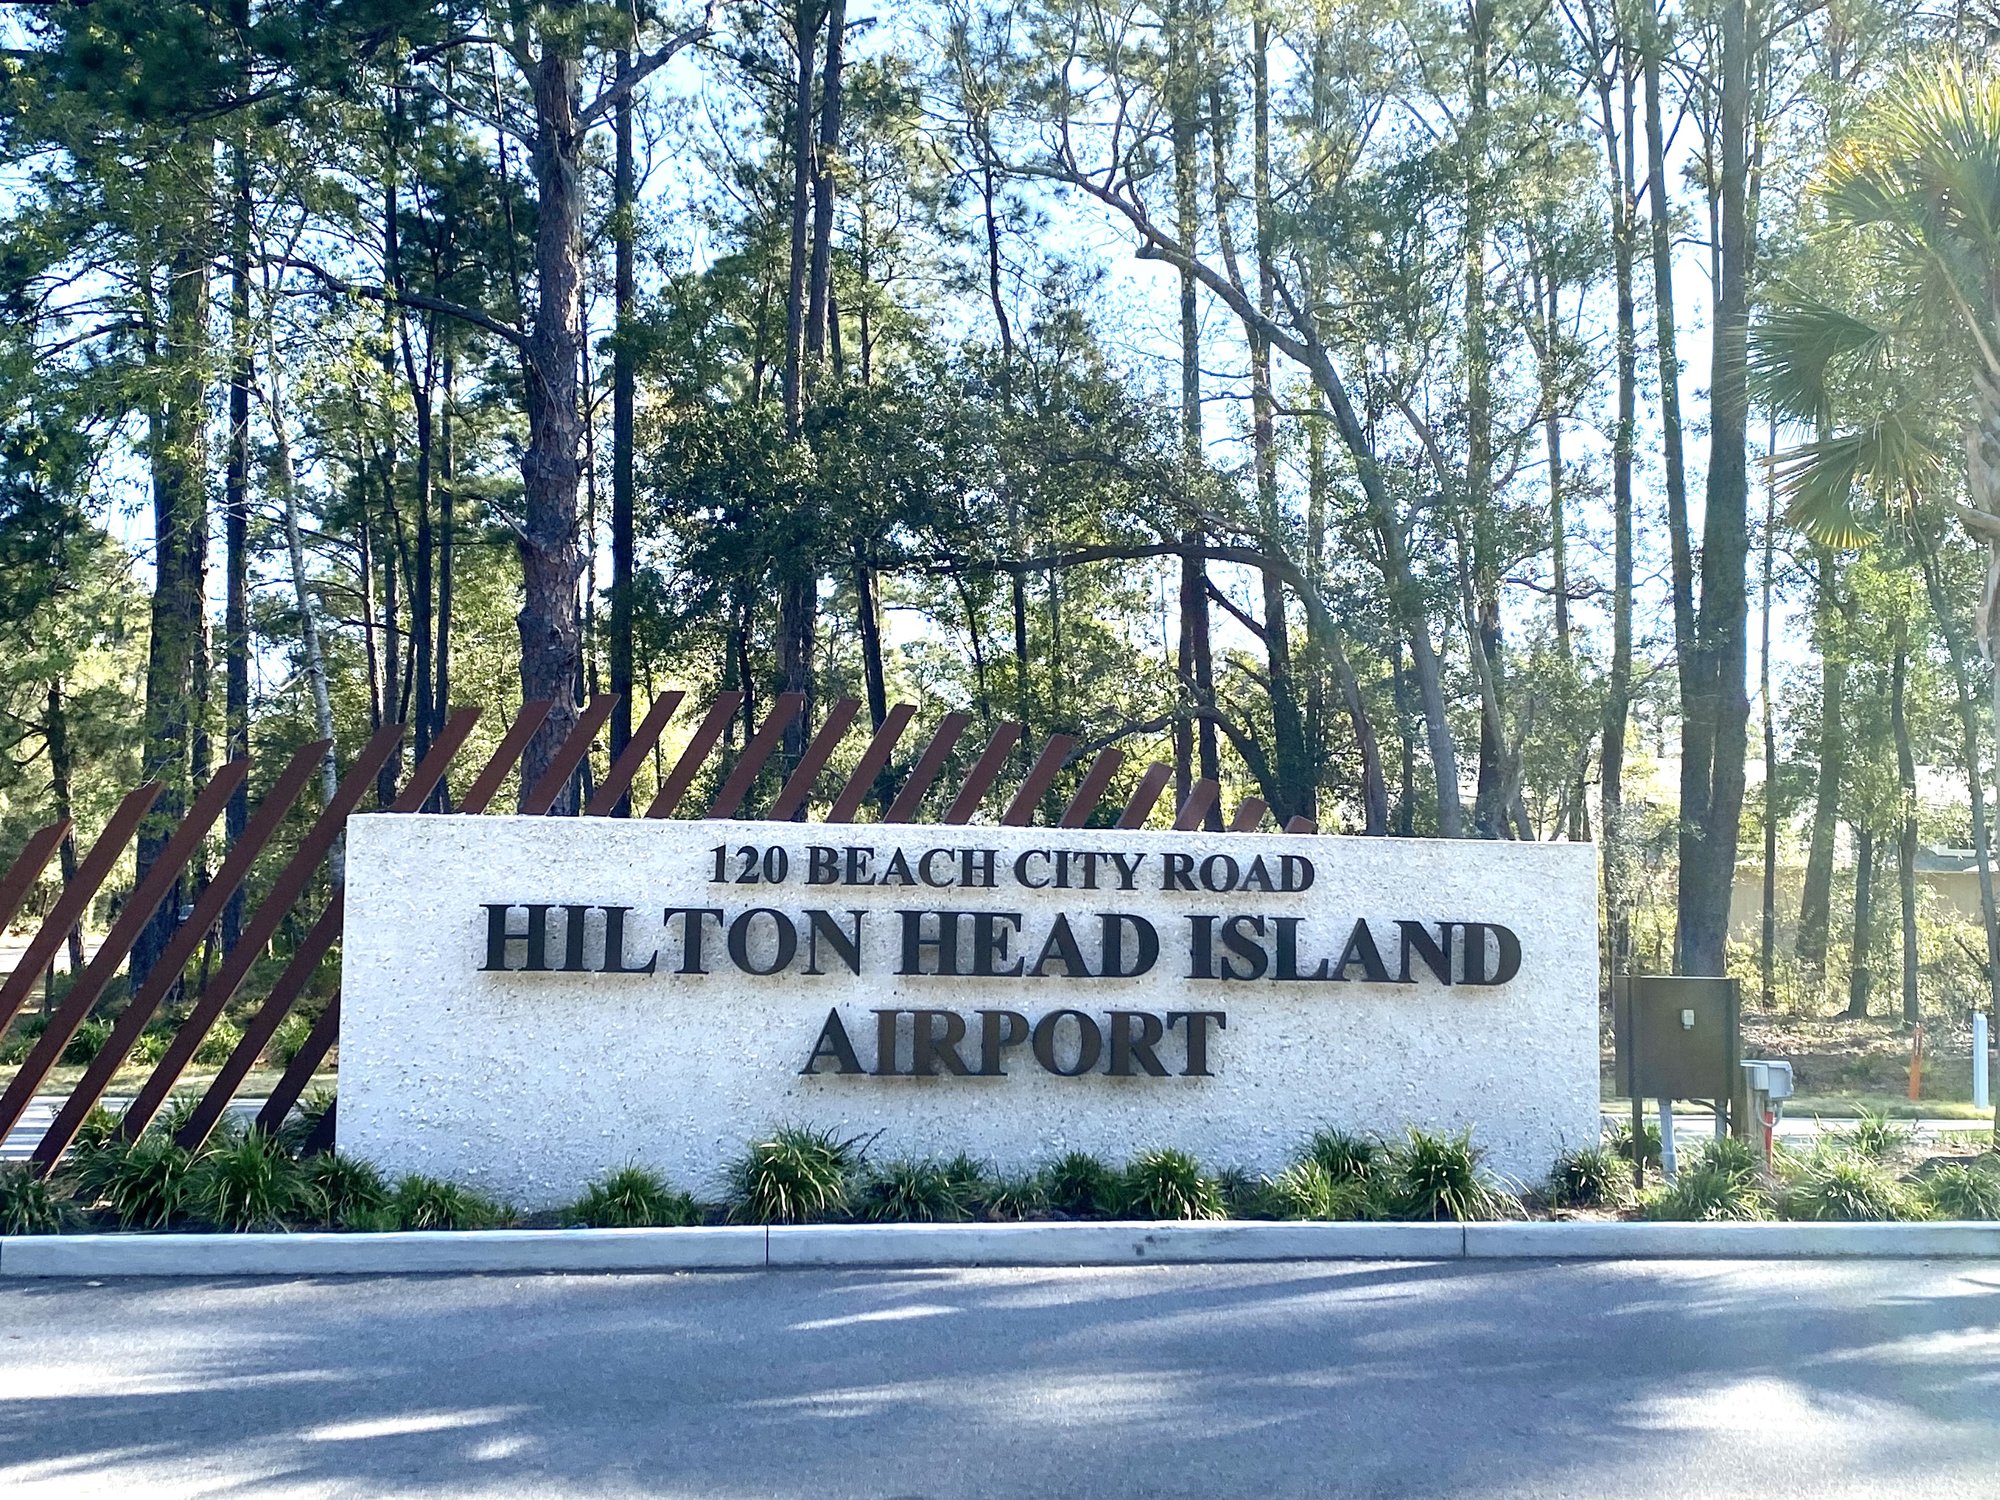 Hilton Head Airport